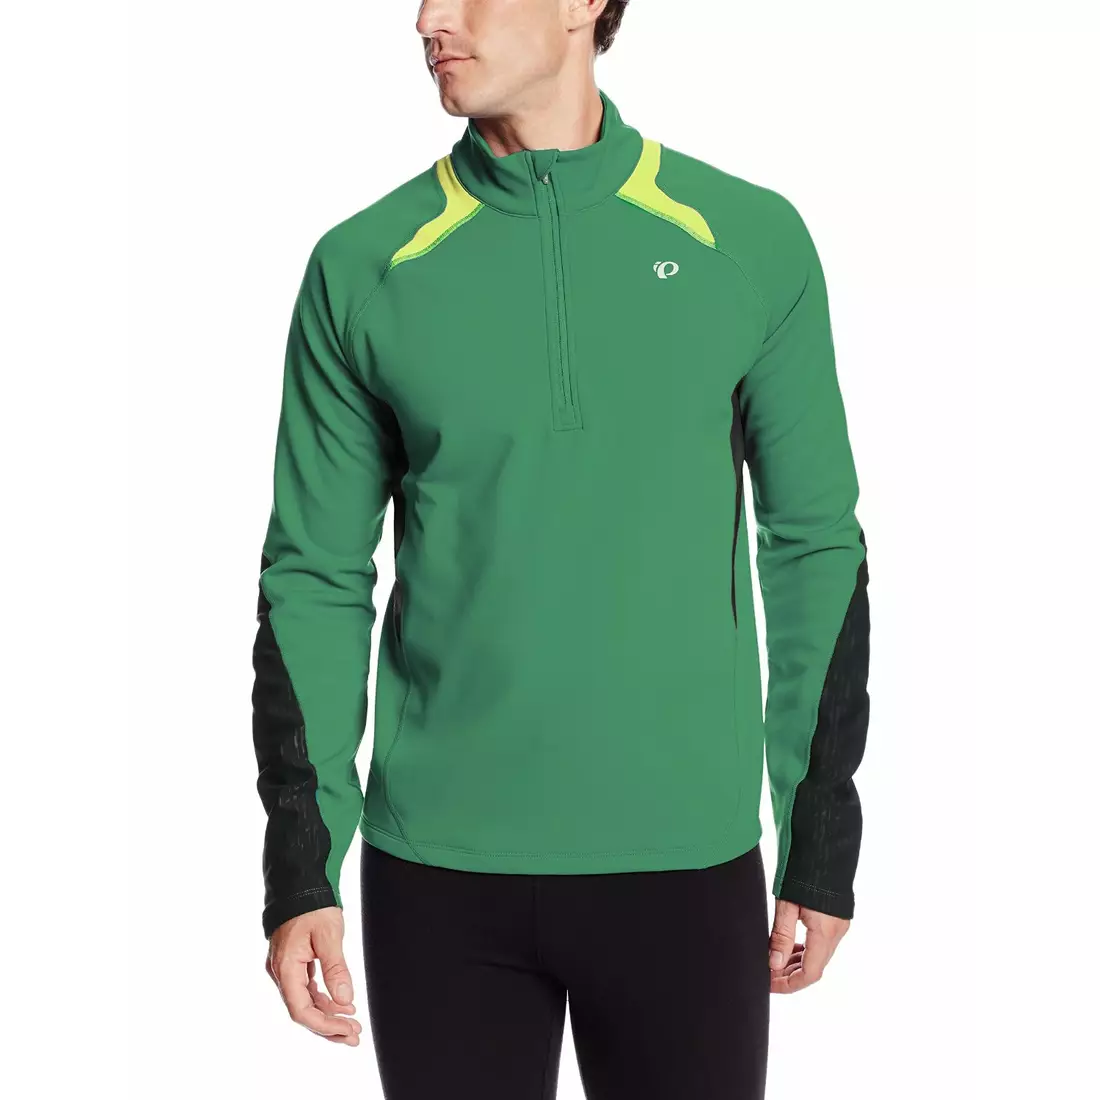 PEARL IZUMI Fly Thermal 12121406-4Df - top de alergare pentru bărbați, culoare: verde